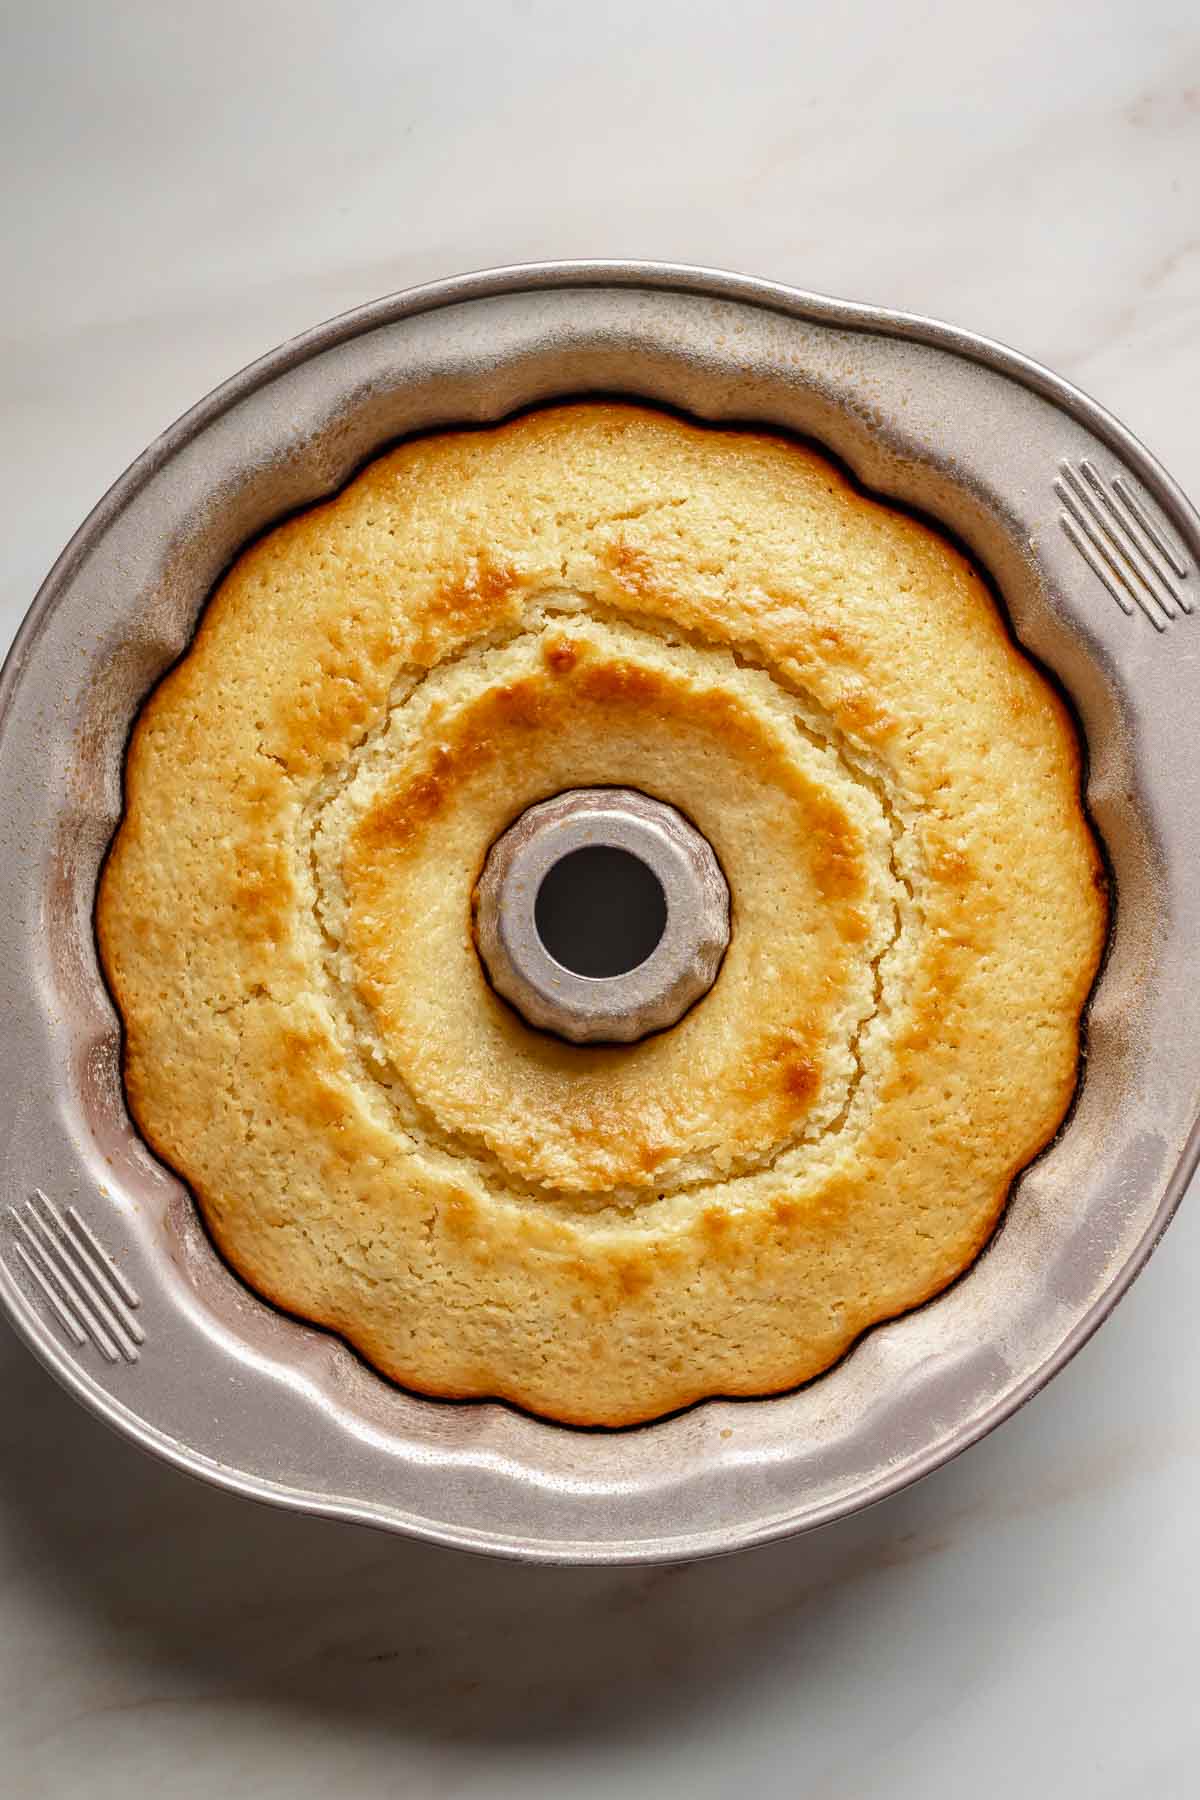 Fully baked lemon ricotta cake in a bundt pan.